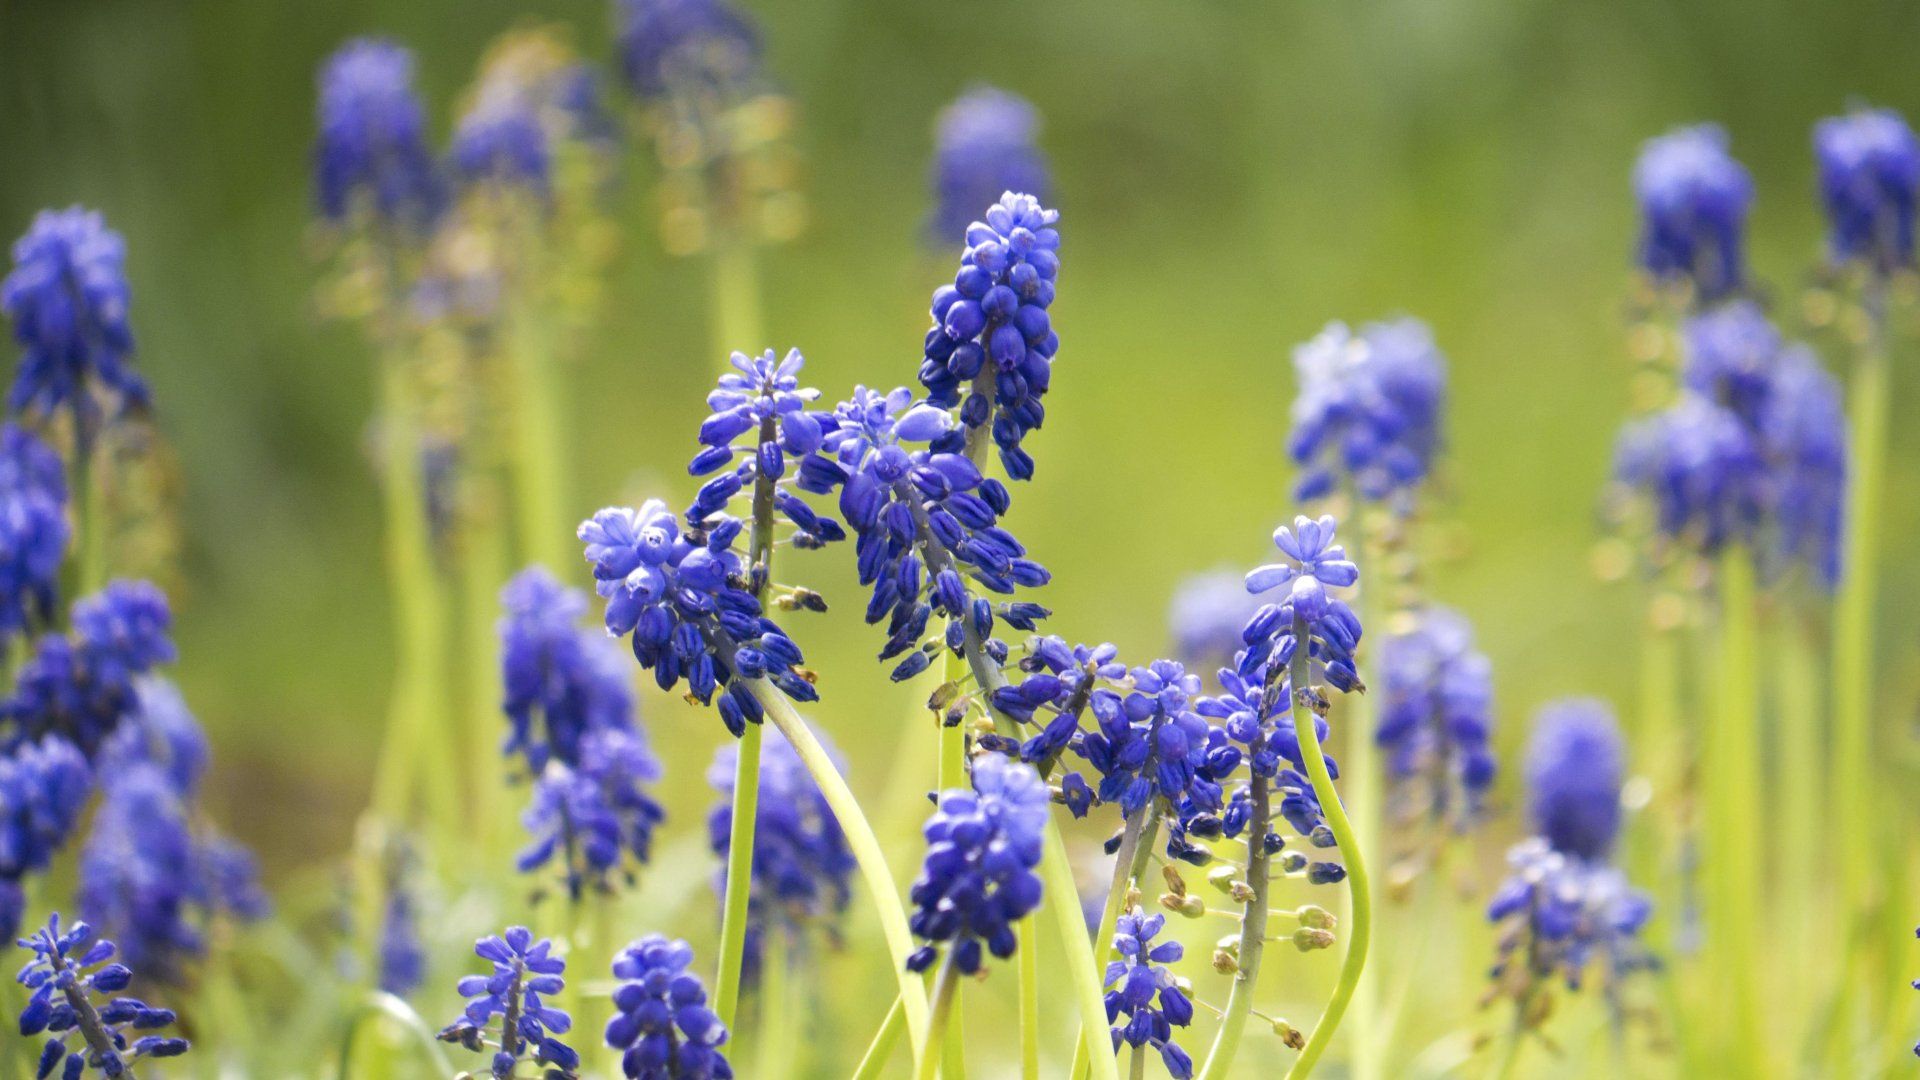 ohio wildflowers photos | Blue+Wildflowers | States of USA ...